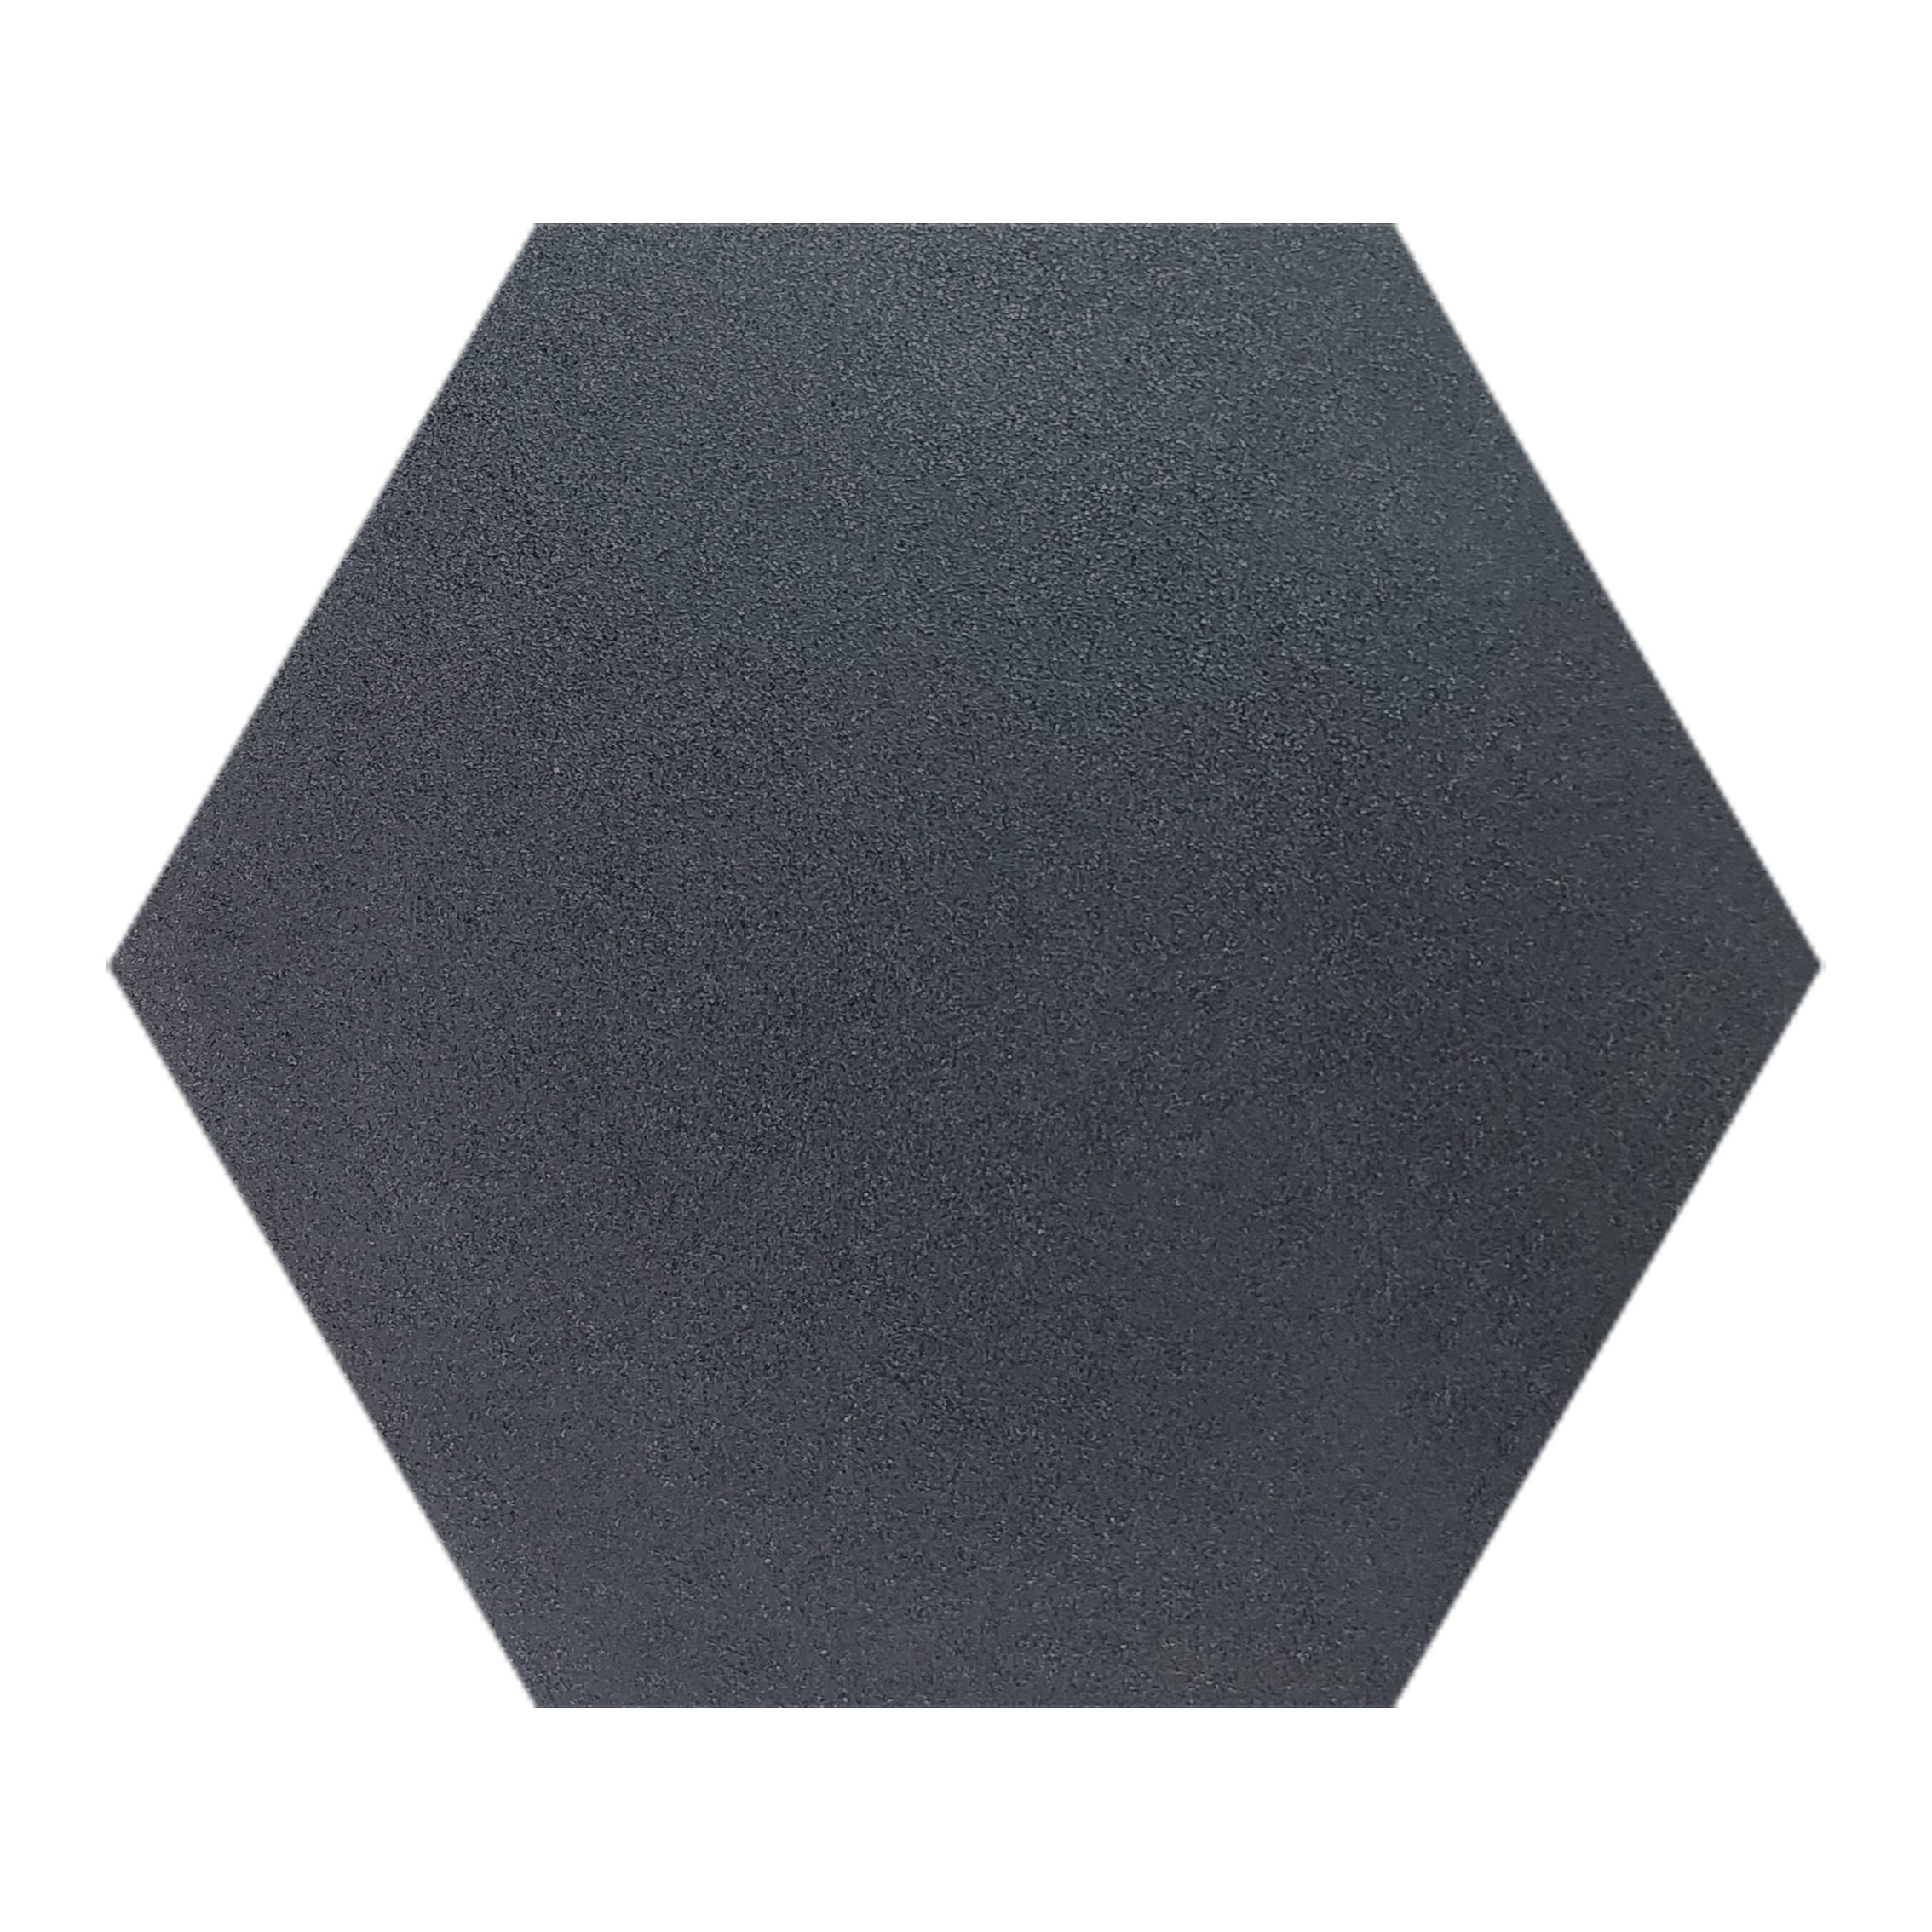 19×22 Hexagon Argos Tile_Black_12.90sfct_20.19_11.89_6.99